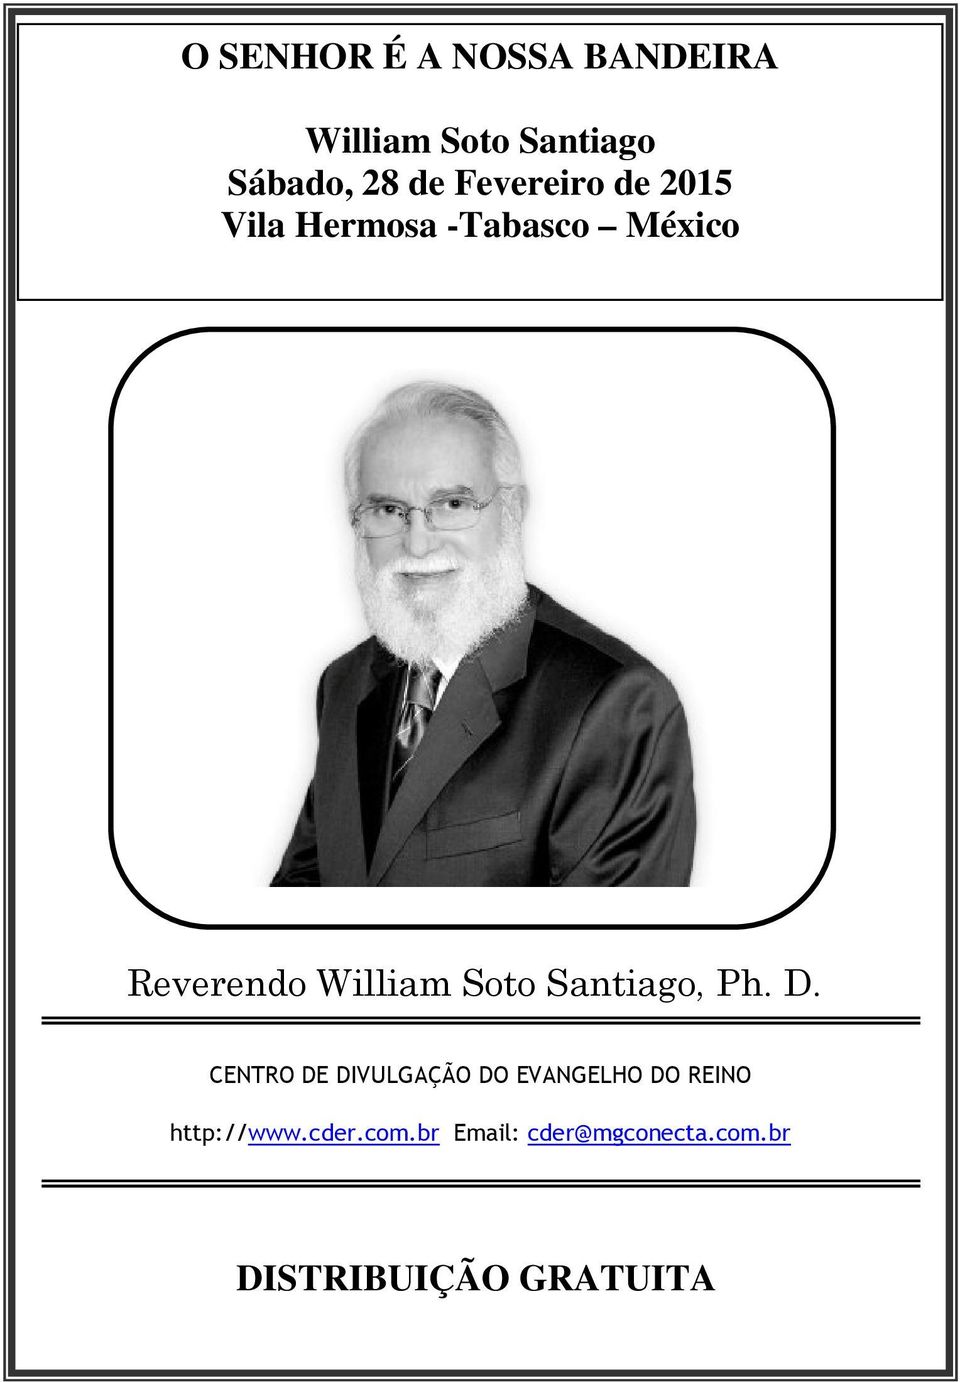 Soto Santiago, Ph. D.